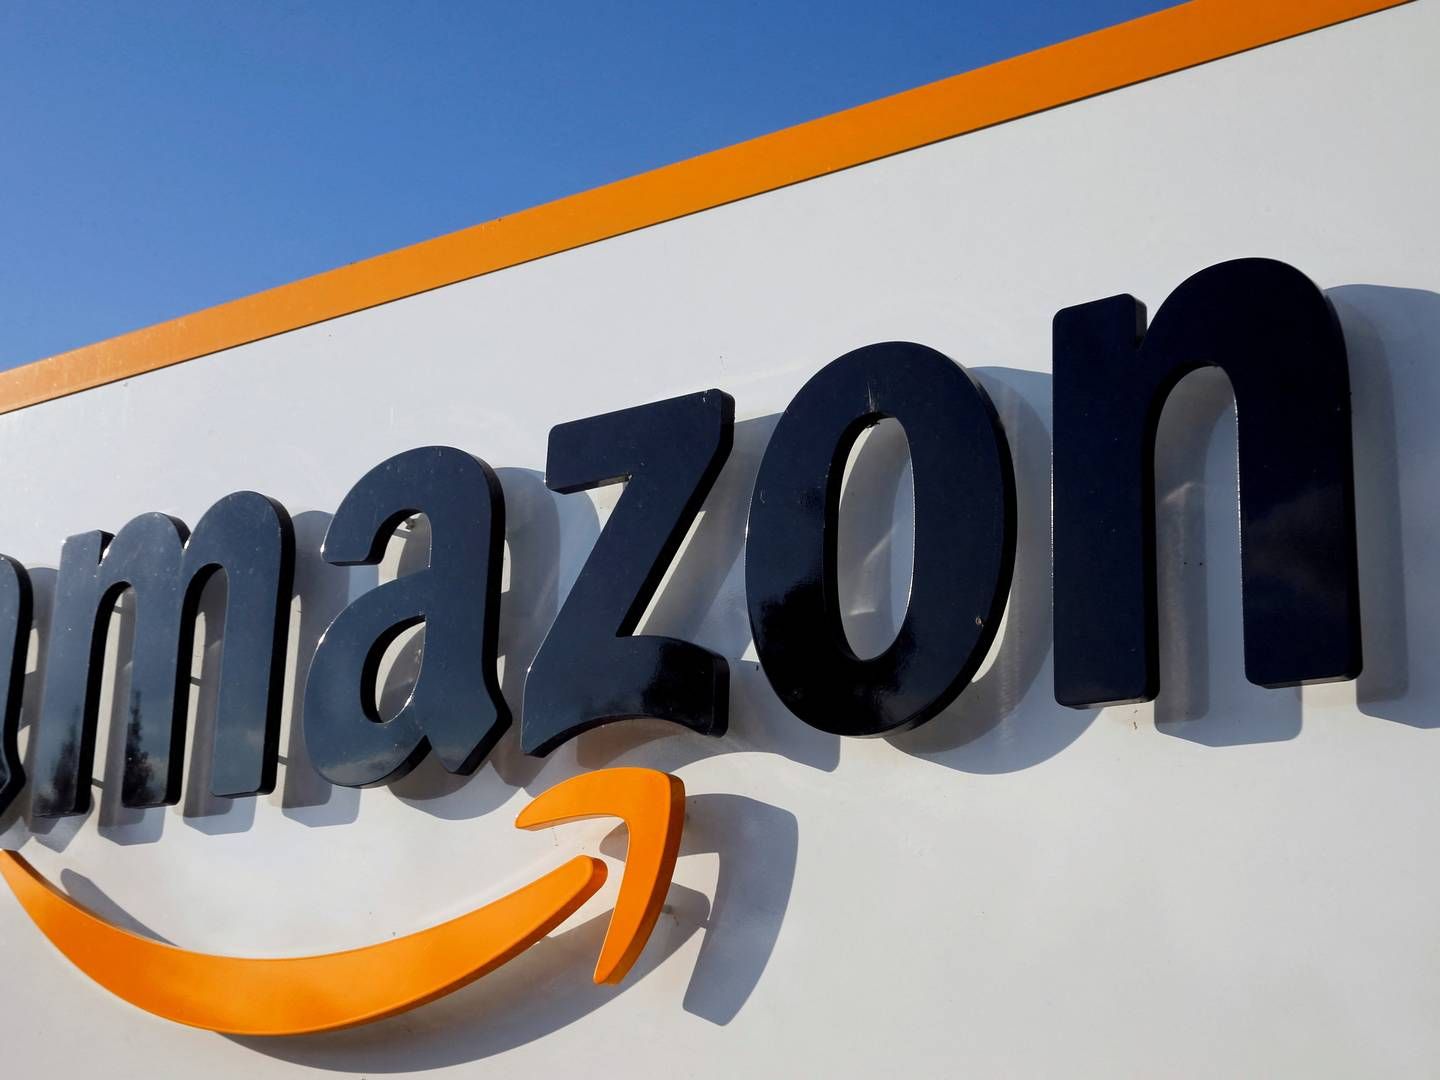 Pædagogernes har solgt sine aktier i Amazon. | Foto: Pascal Rossignol/Reuters/Ritzau Scanpix